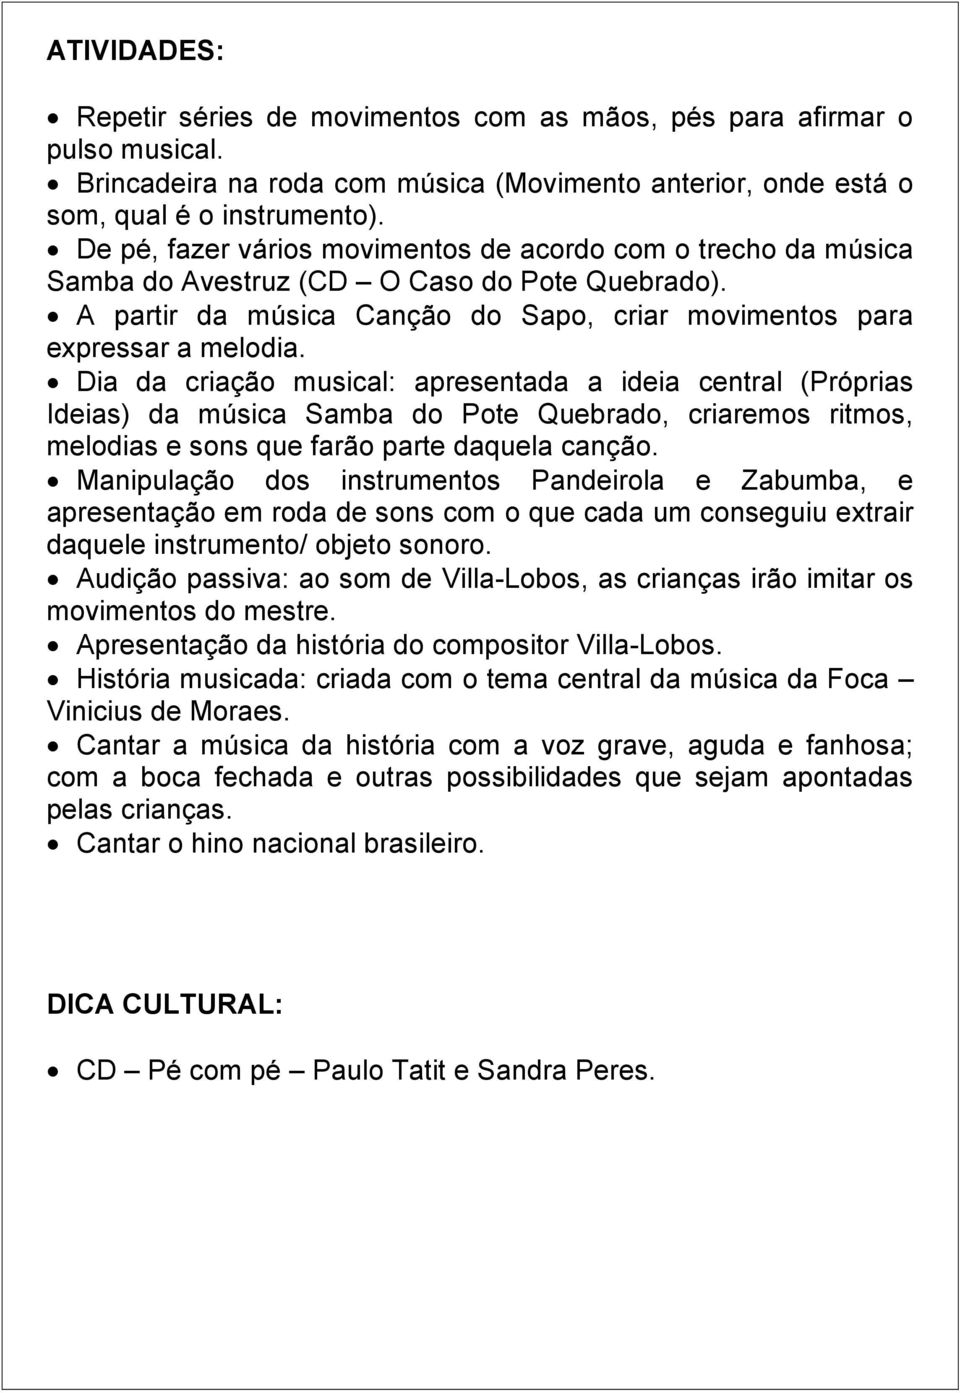 Dia da criação musical: apresentada a ideia central (Próprias Ideias) da música Samba do Pote Quebrado, criaremos ritmos, melodias e sons que farão parte daquela canção.